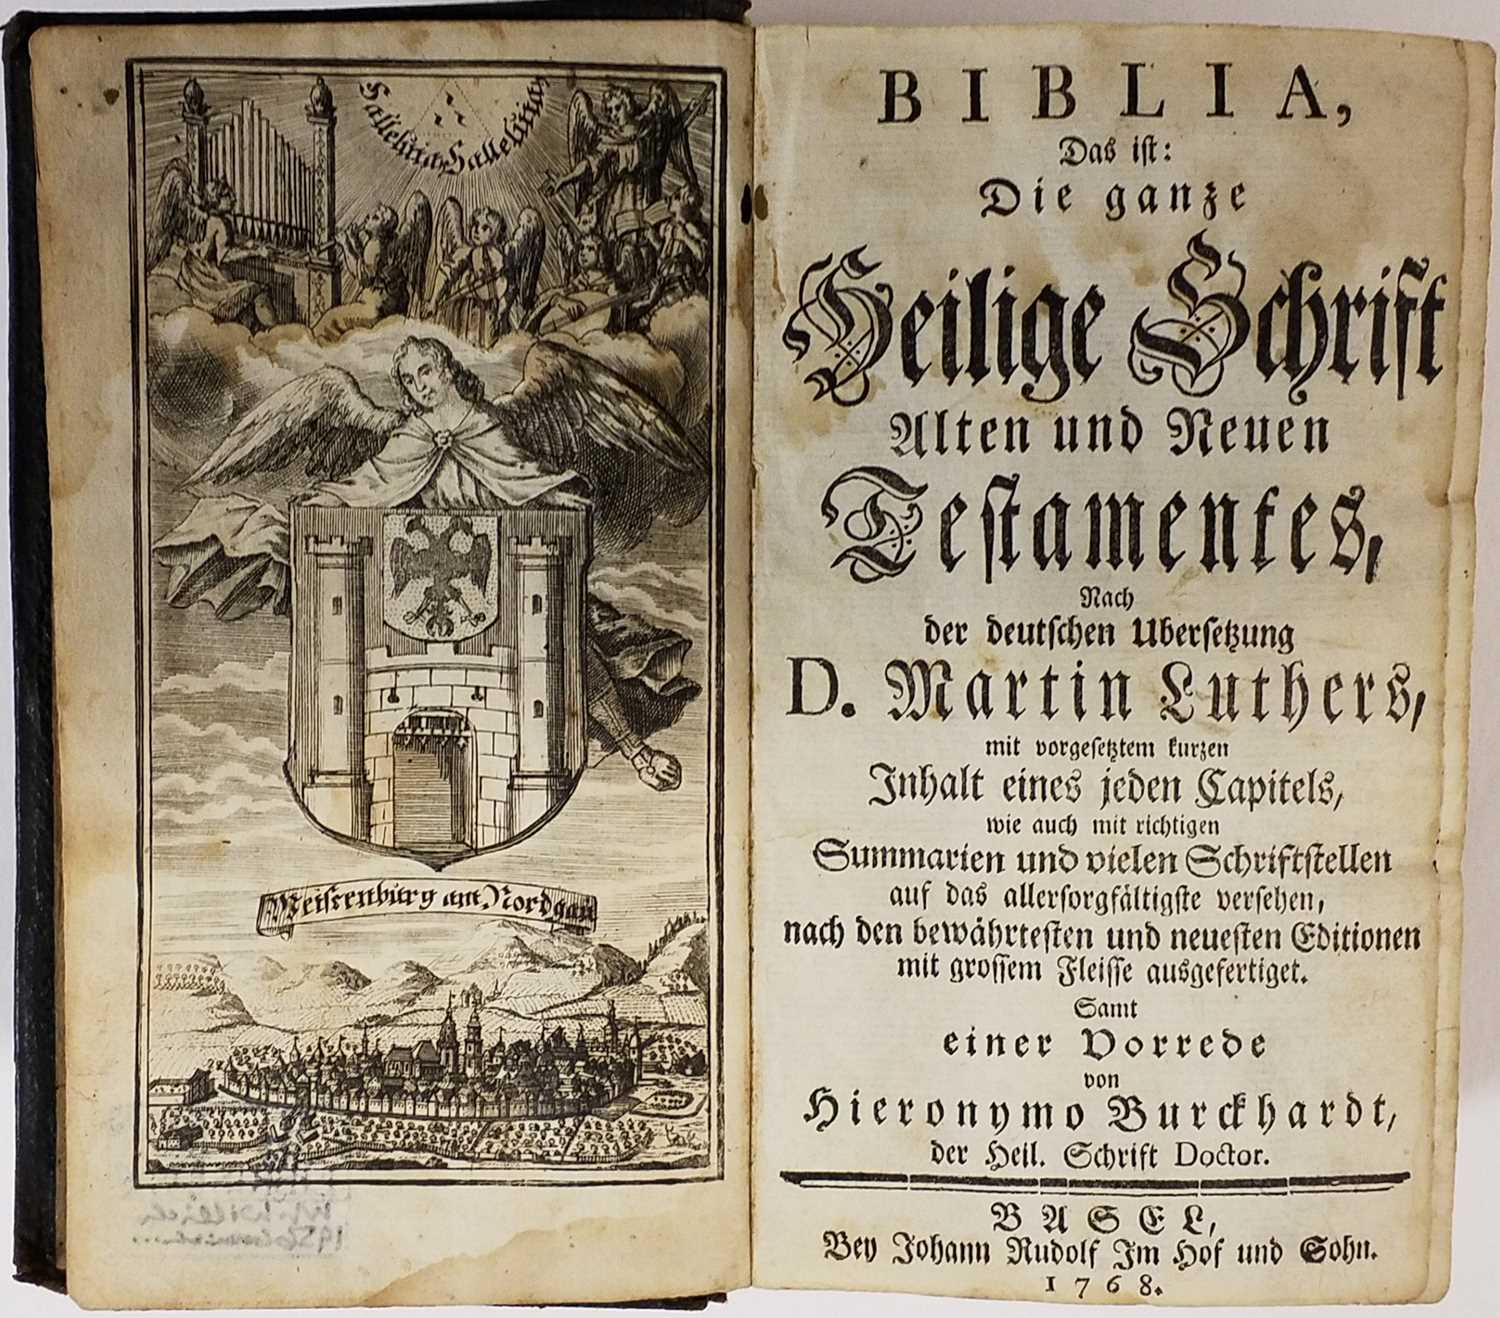 Lot 394 - Bible [German]. Biblia, das ist: die ganze Heilige Schrift Alten und Neuen Testamentes, Basel, 1768